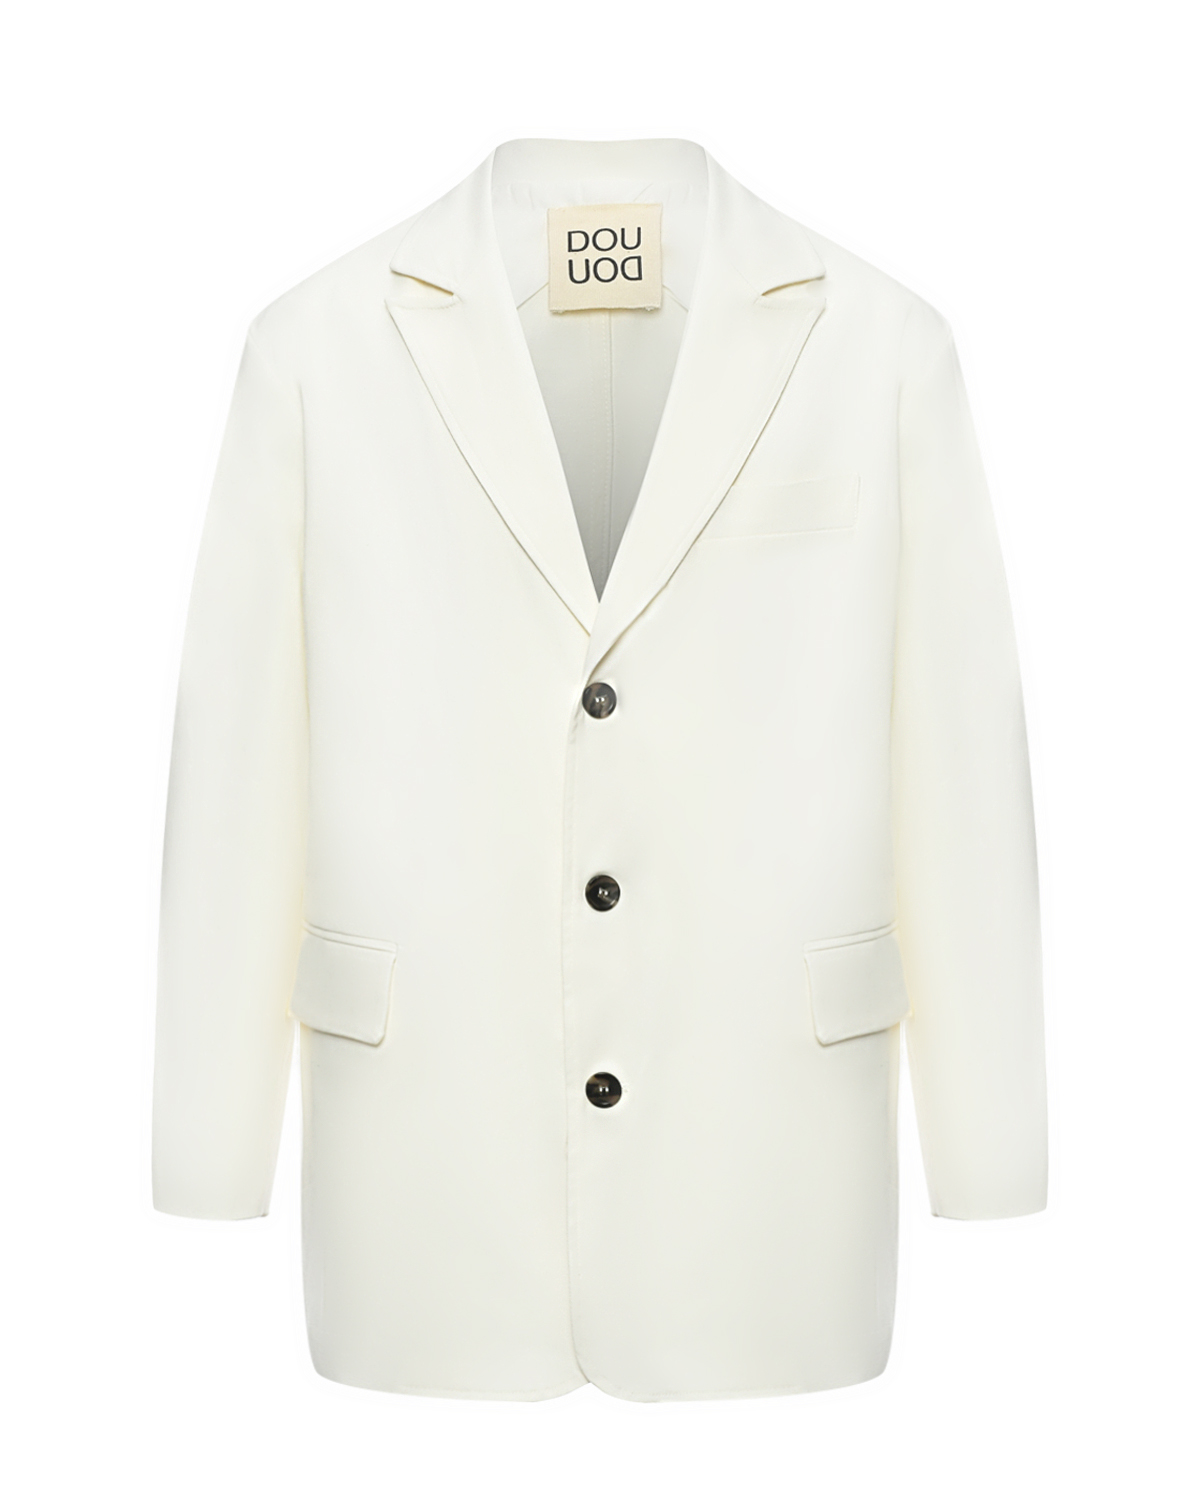 Однобортный пиджак, белый DOUUOD пиджак оверсайз белый glvr m